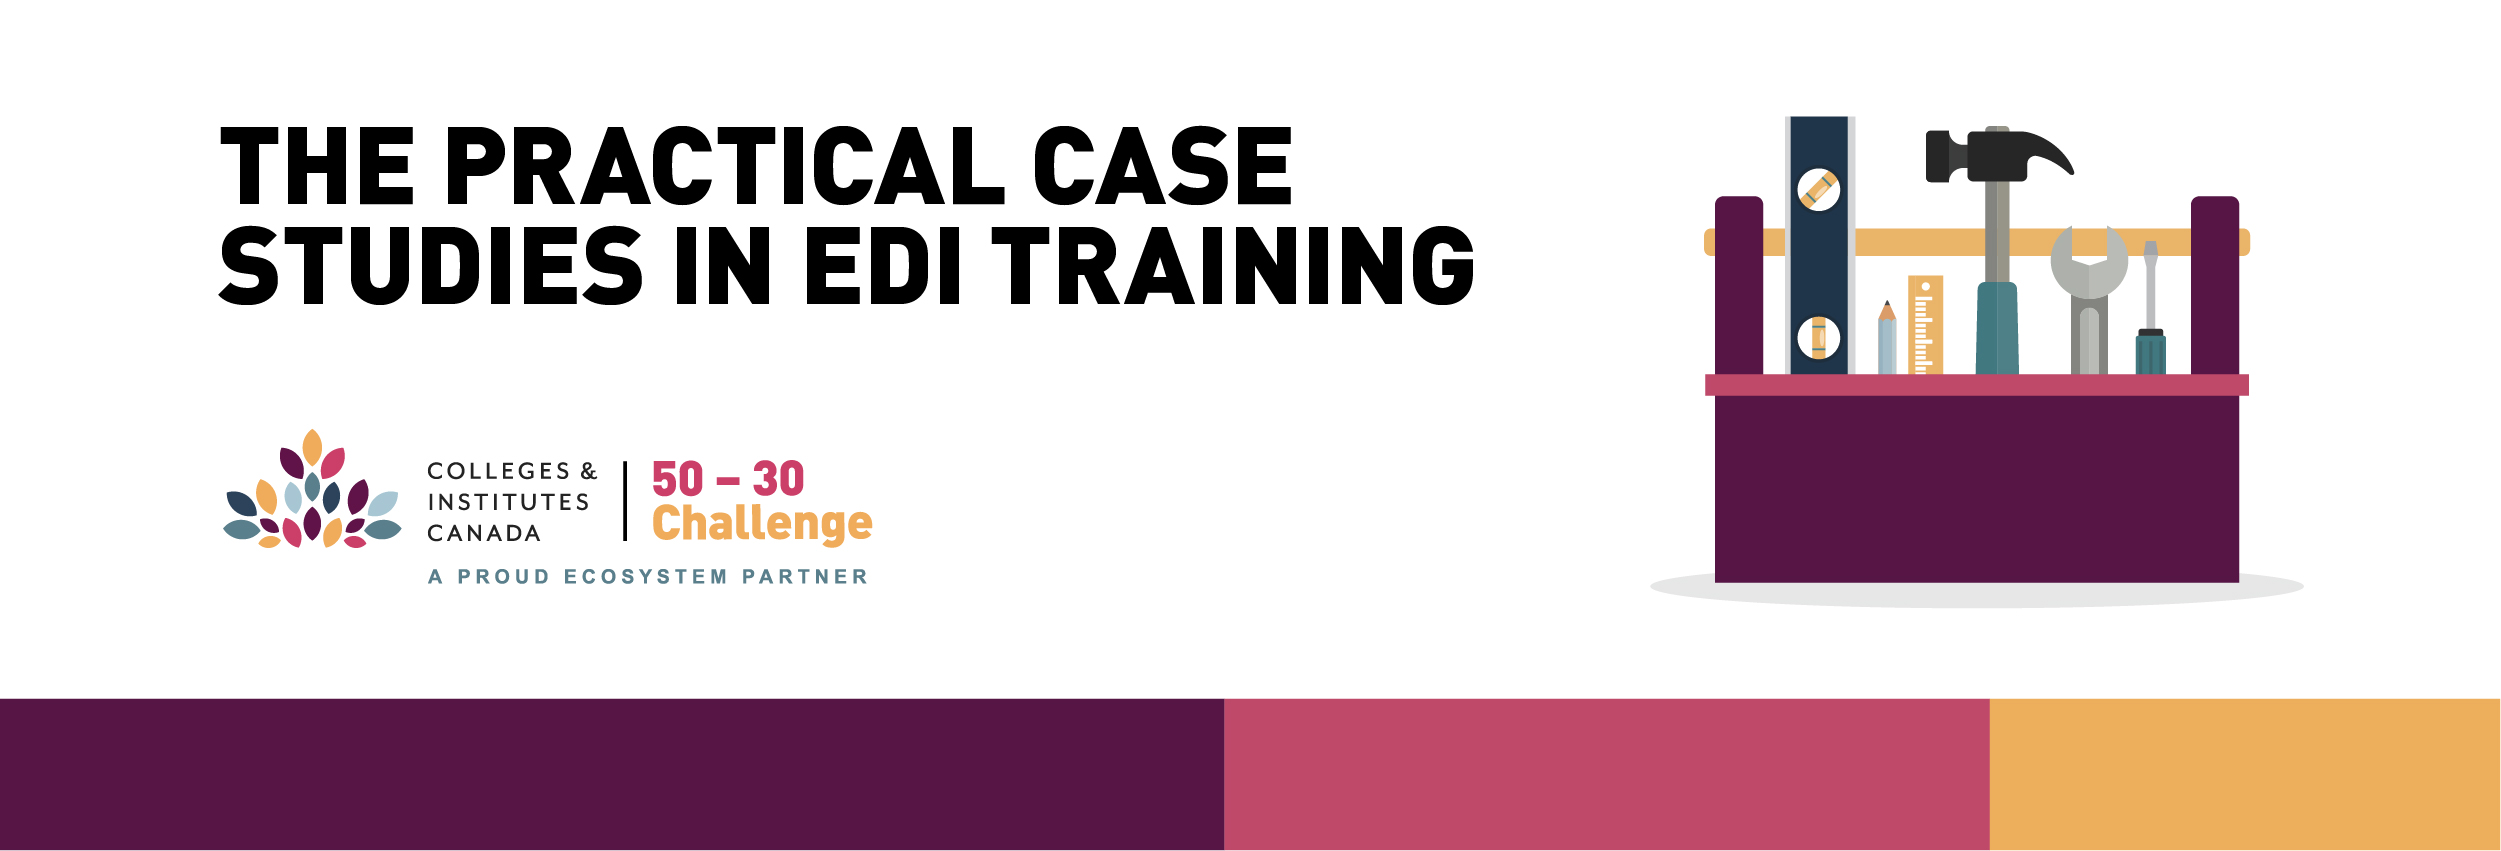 The Practical Case Studies in EDI Training